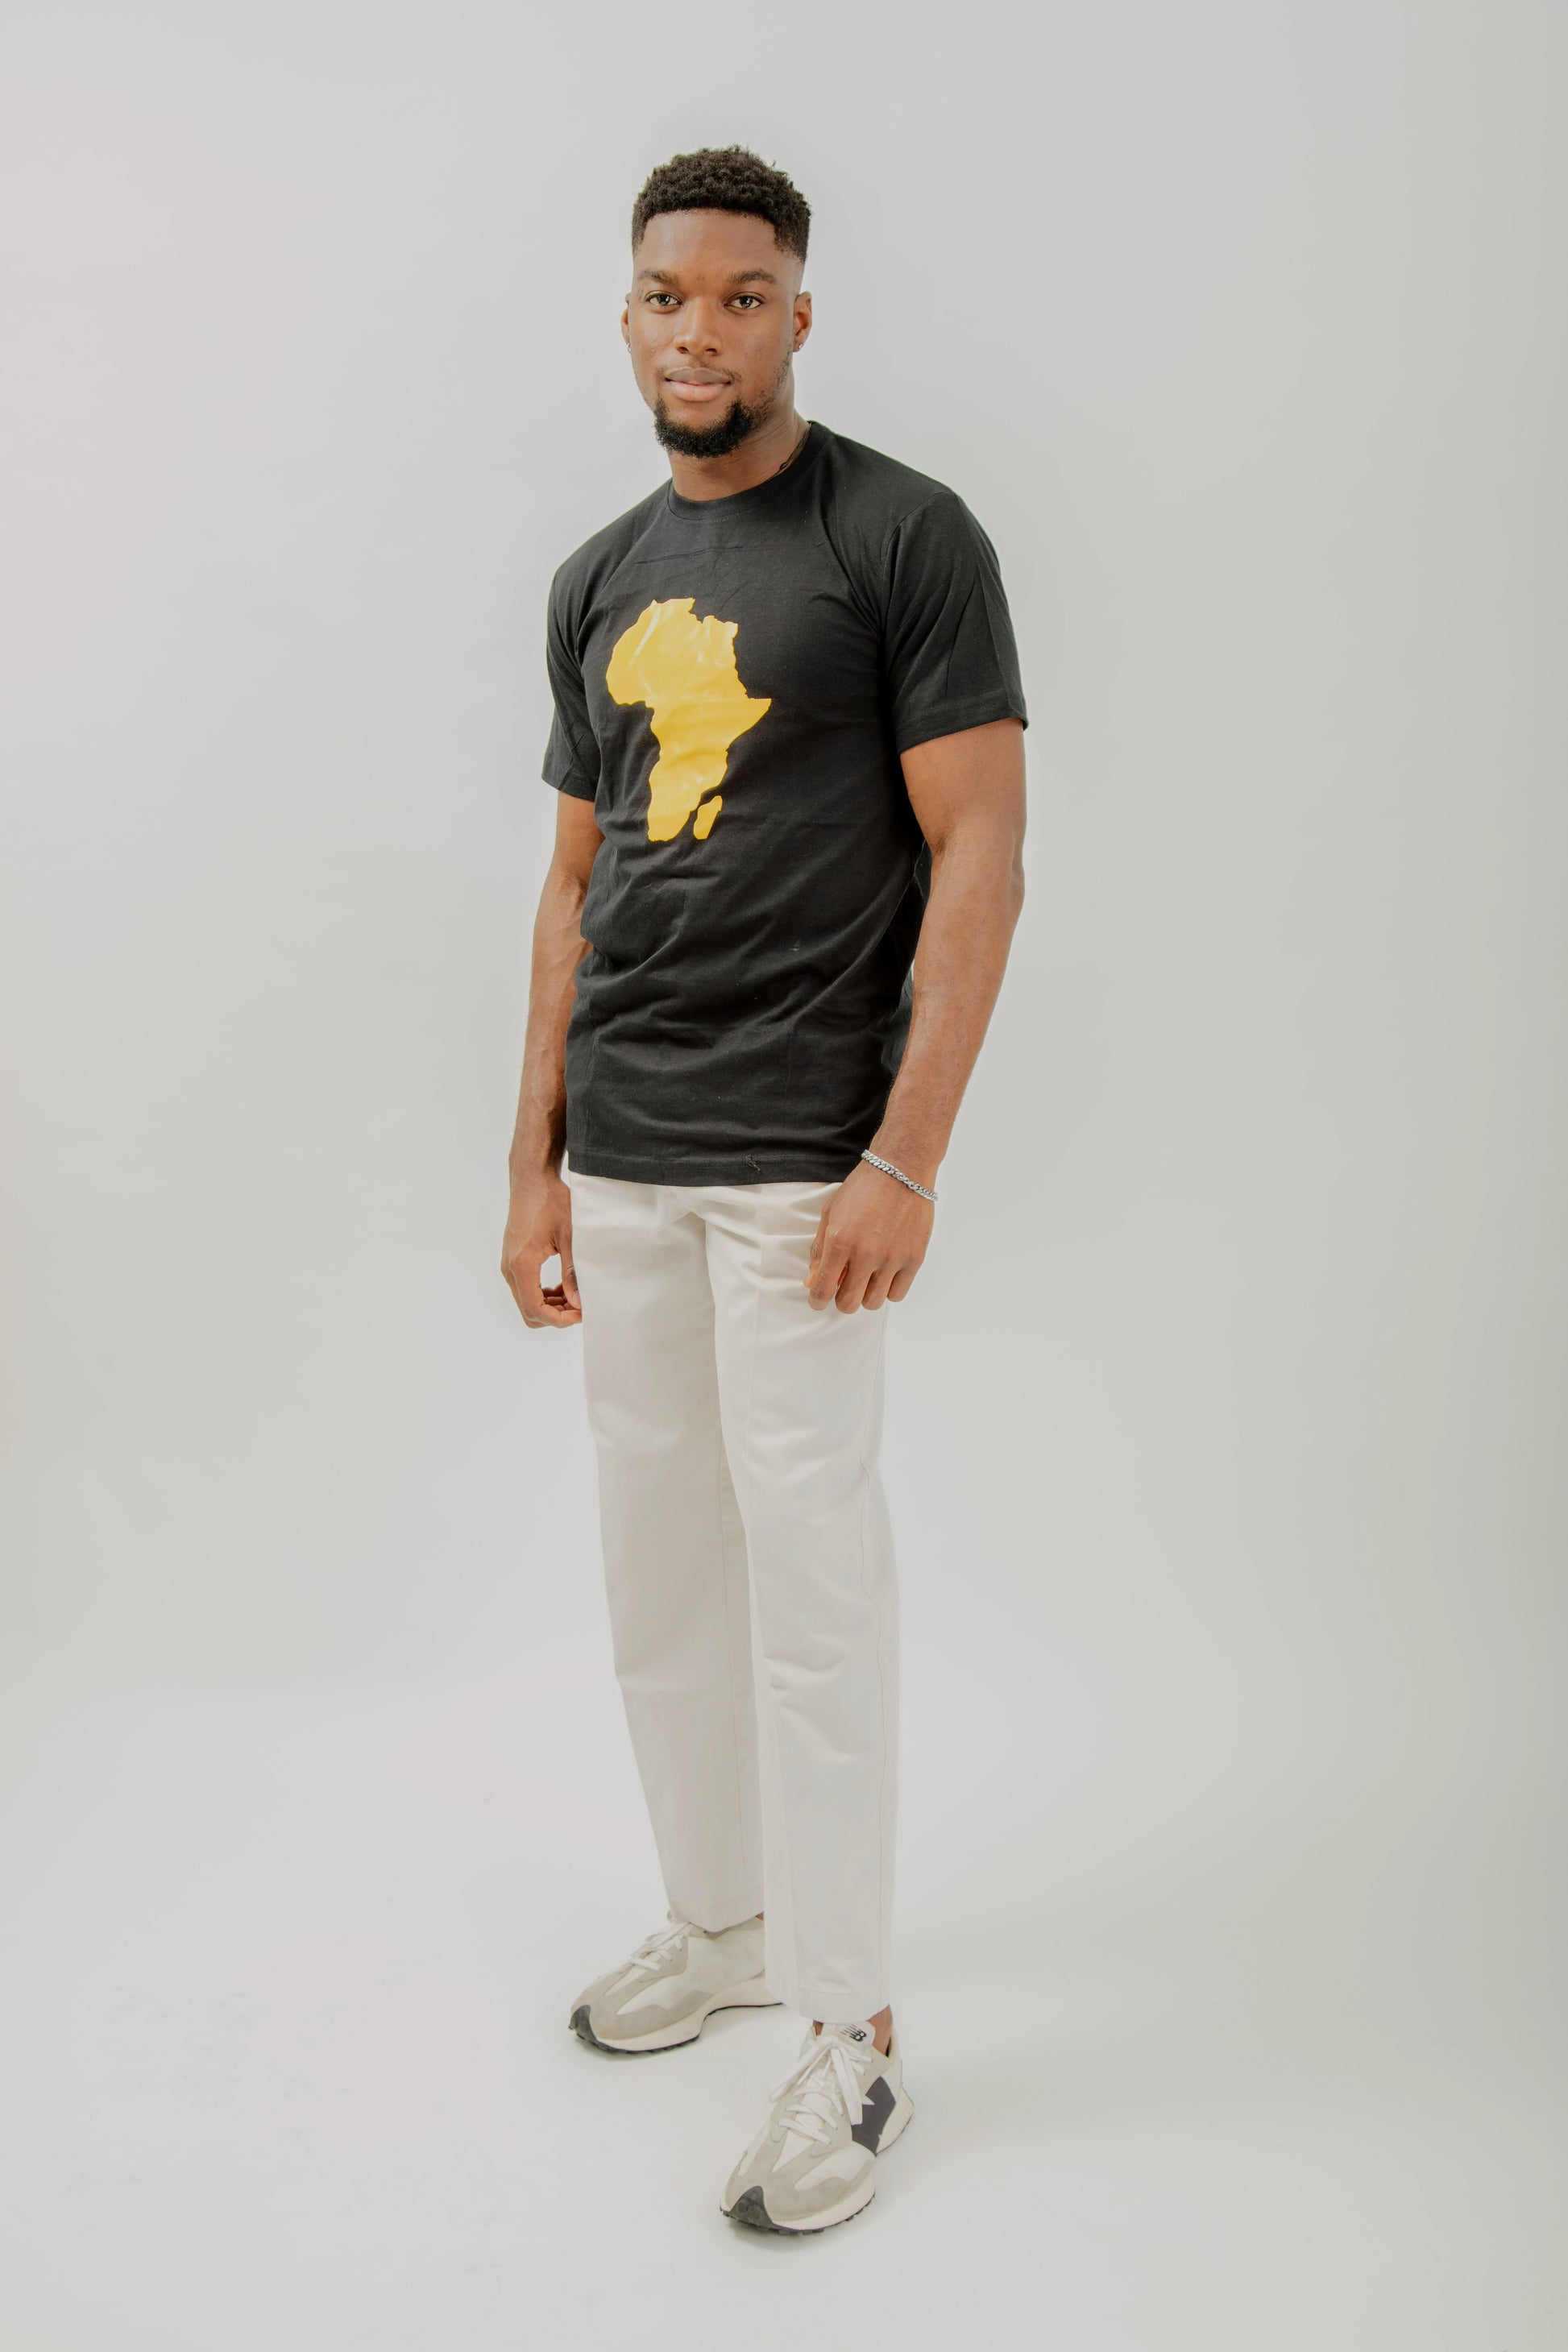 Model Bassi in Agwara African Map Unisex Tshirt (Side view)